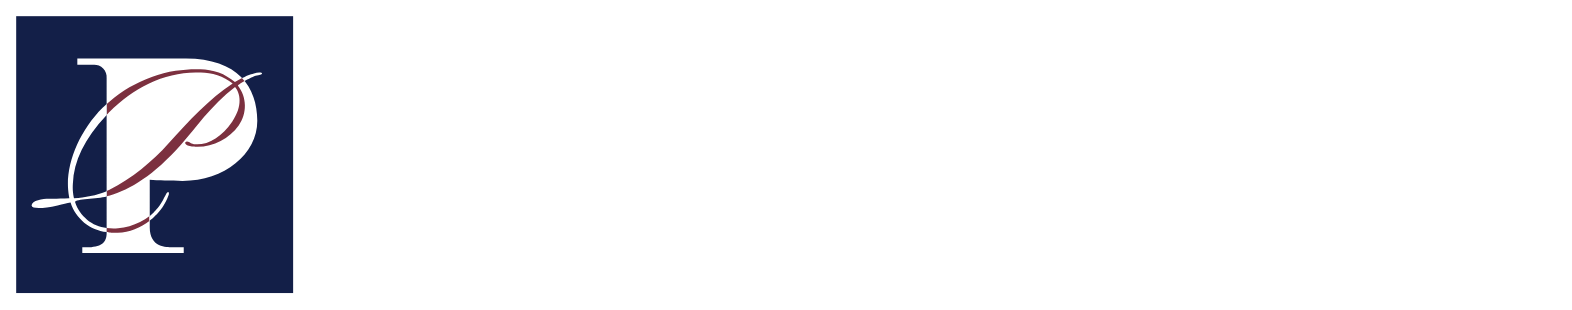 Pacific Premier Bancorp
 Logo groß für dunkle Hintergründe (transparentes PNG)